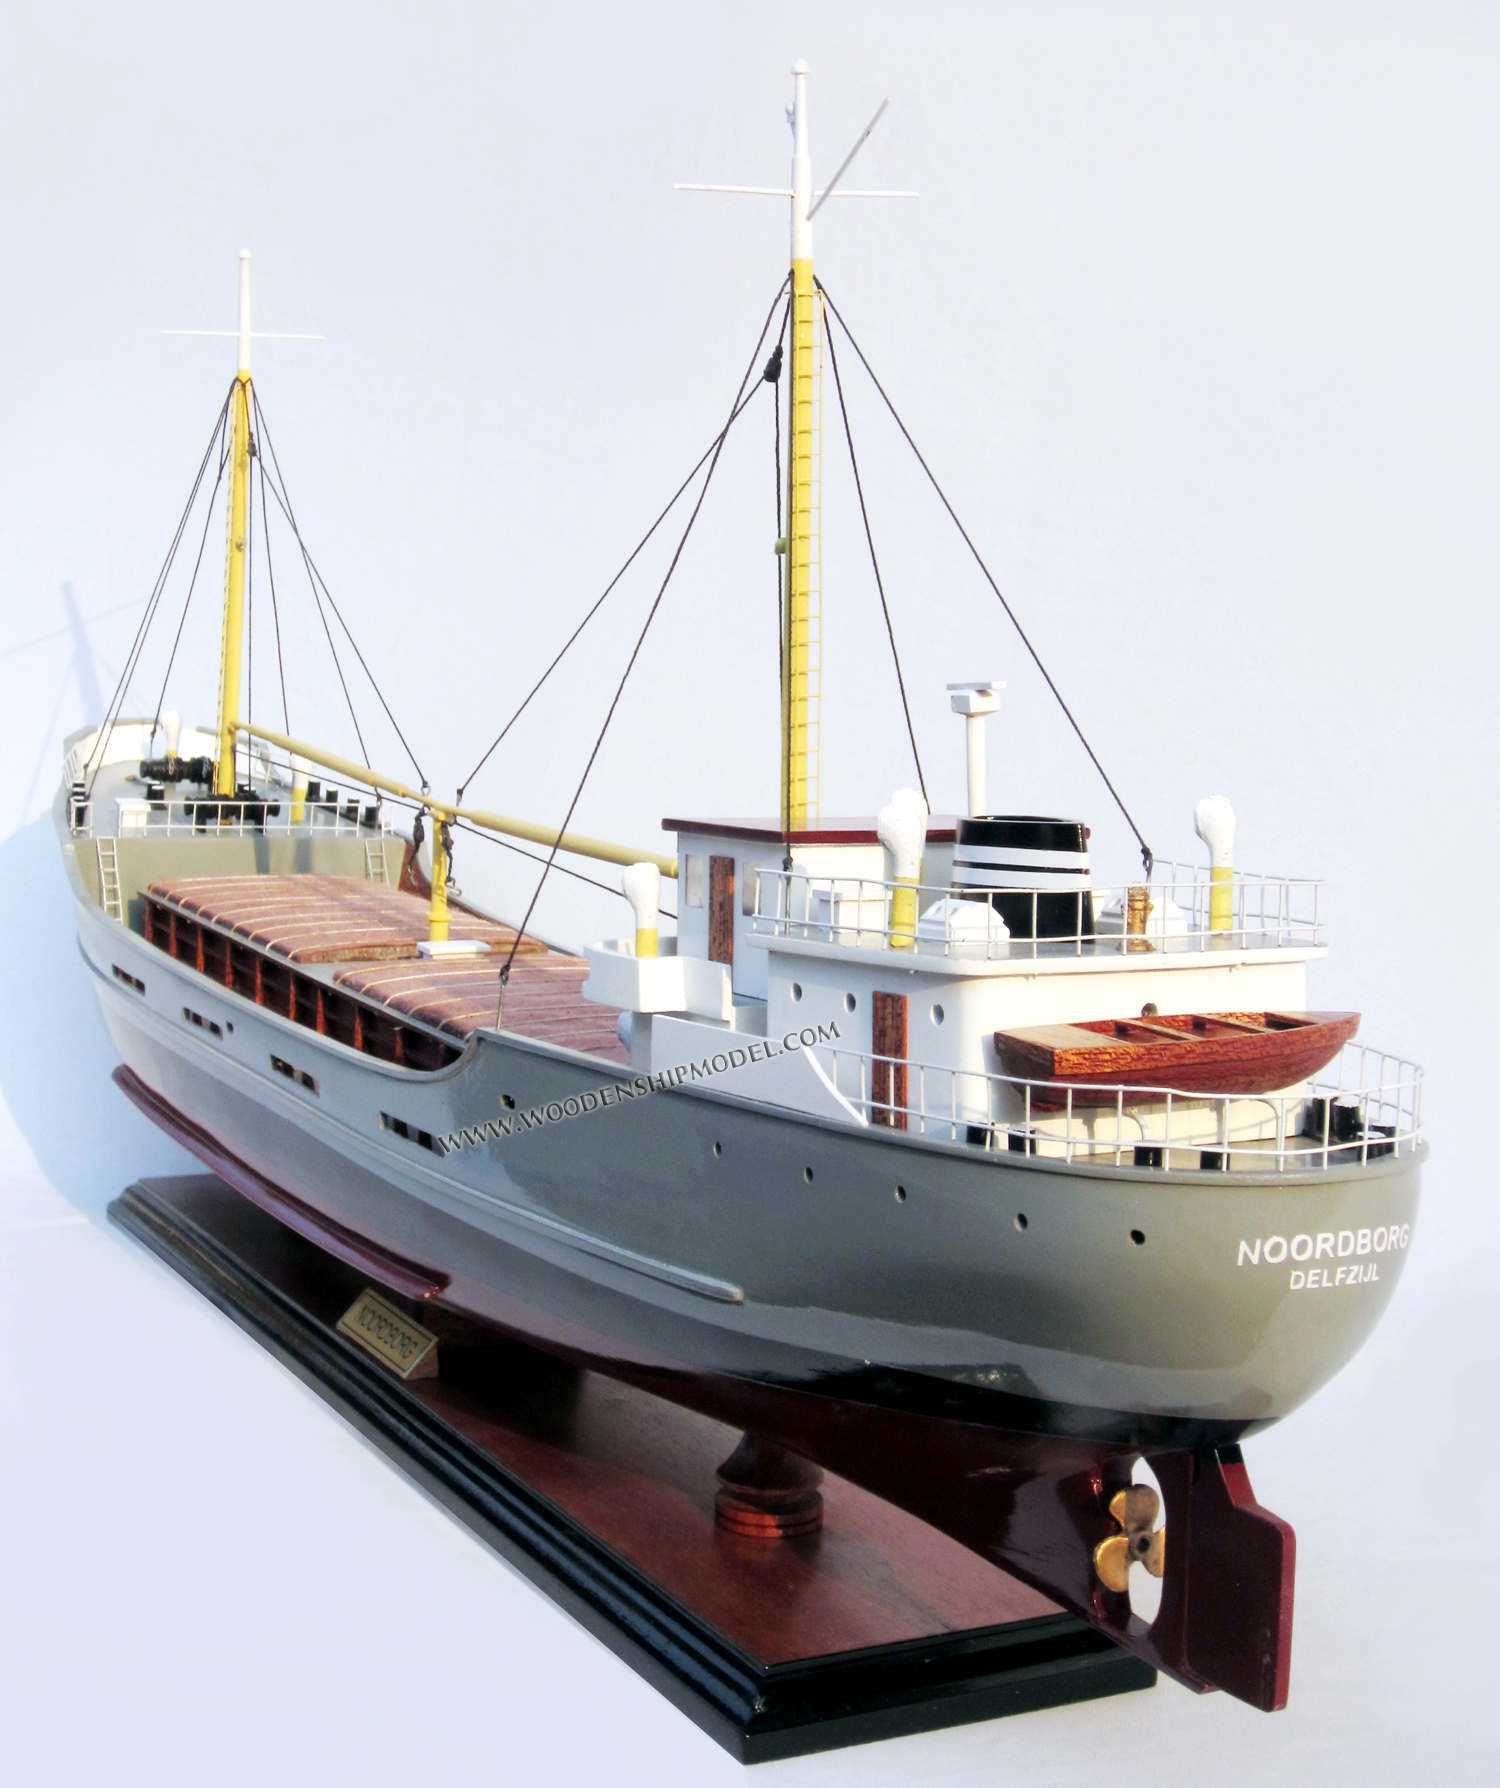 Noordborg schip model